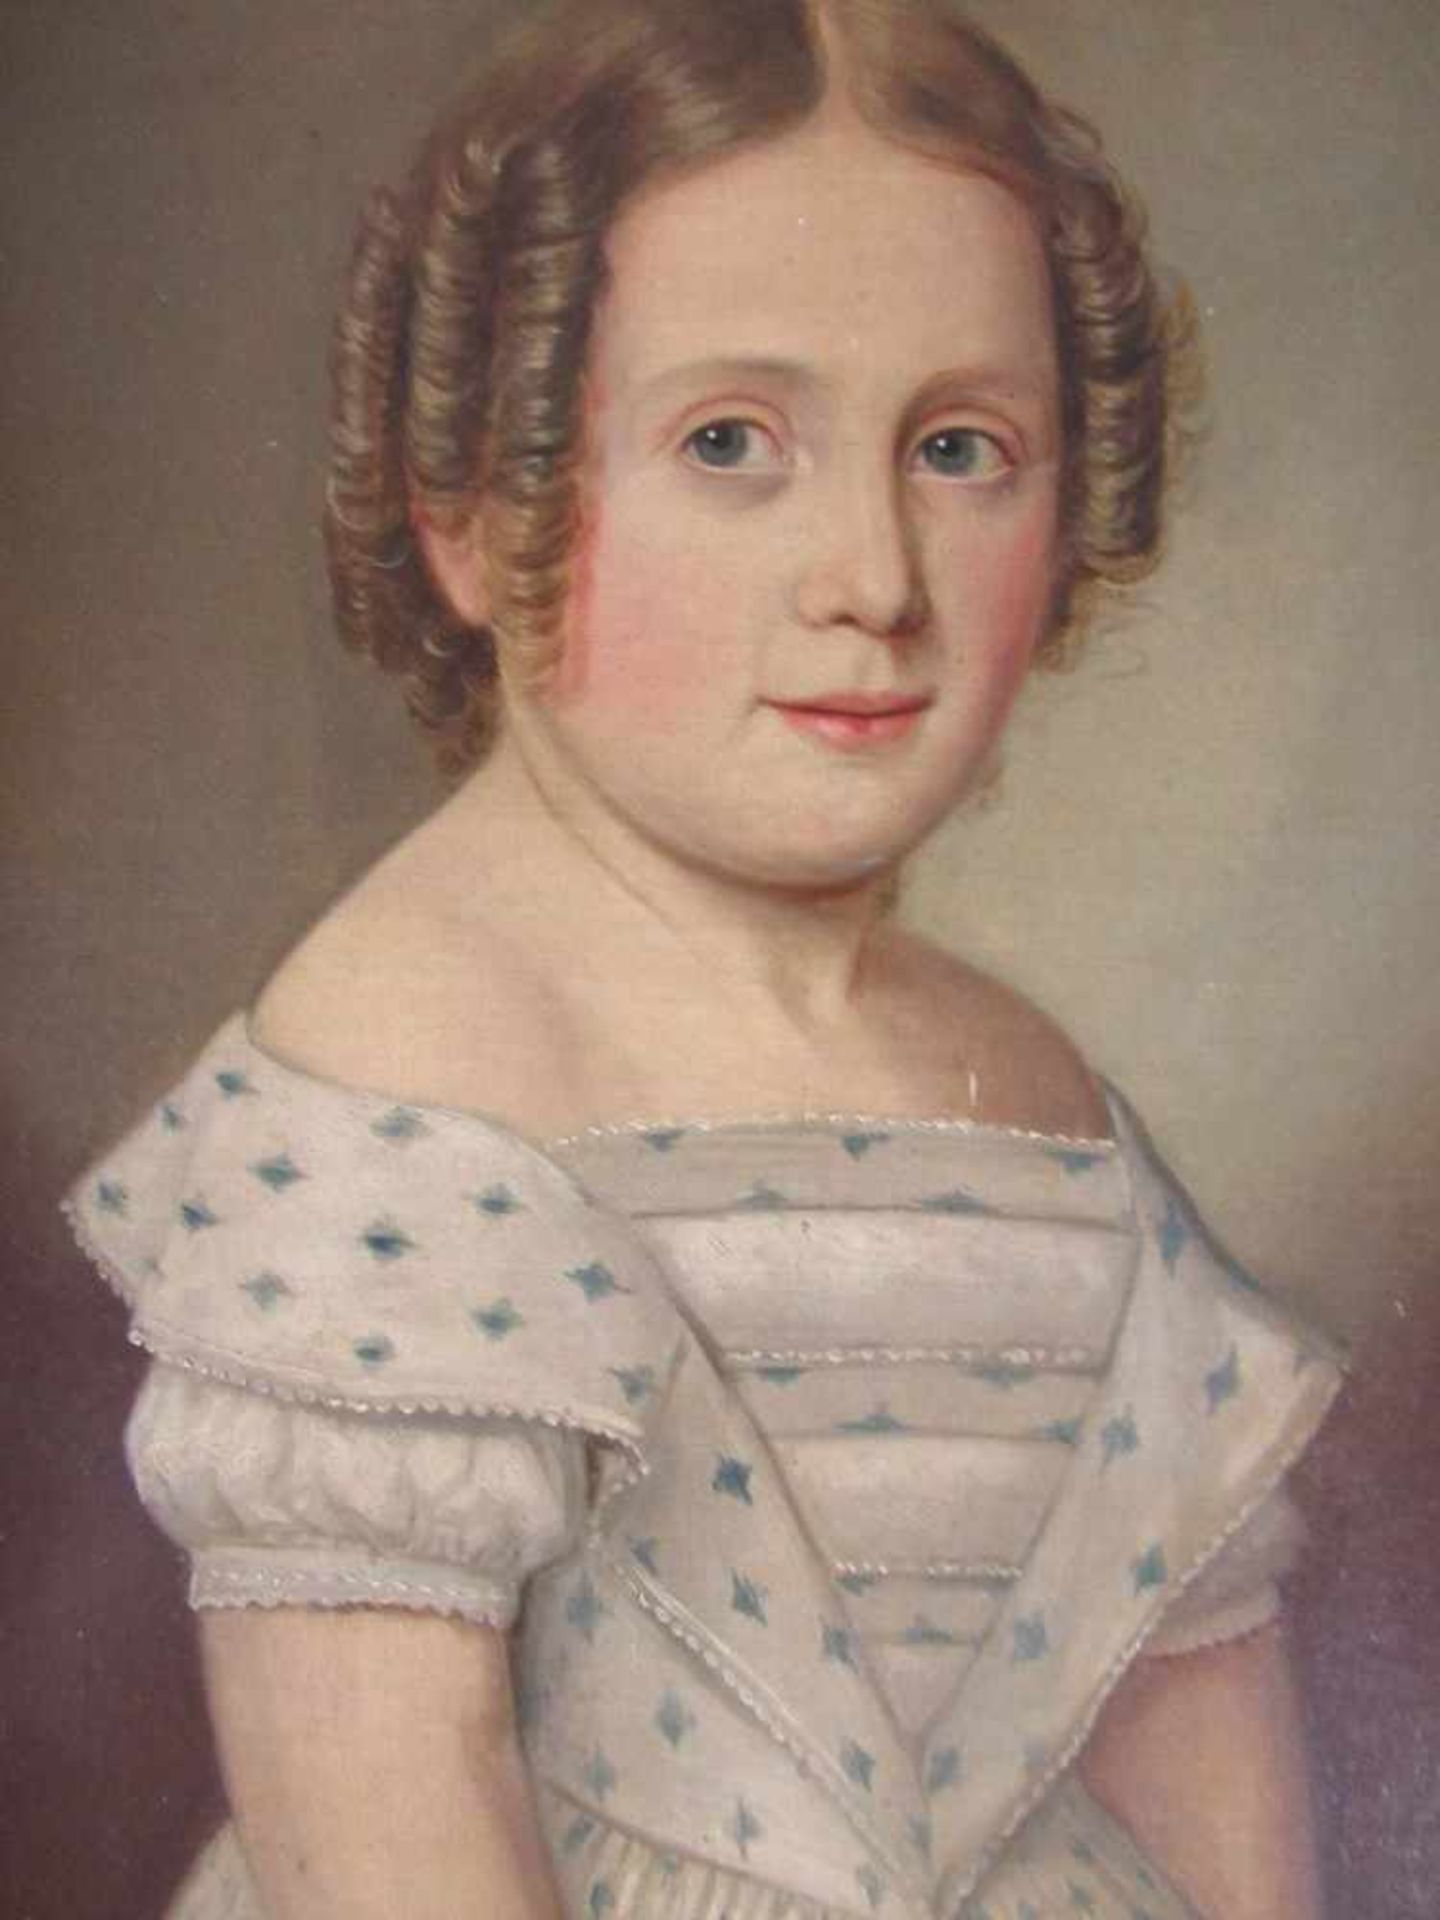 Ölgemälde Öl auf Leinwand diese aufgezogen Biedermeier um 1850 Darstellung eines jungen Mädchens